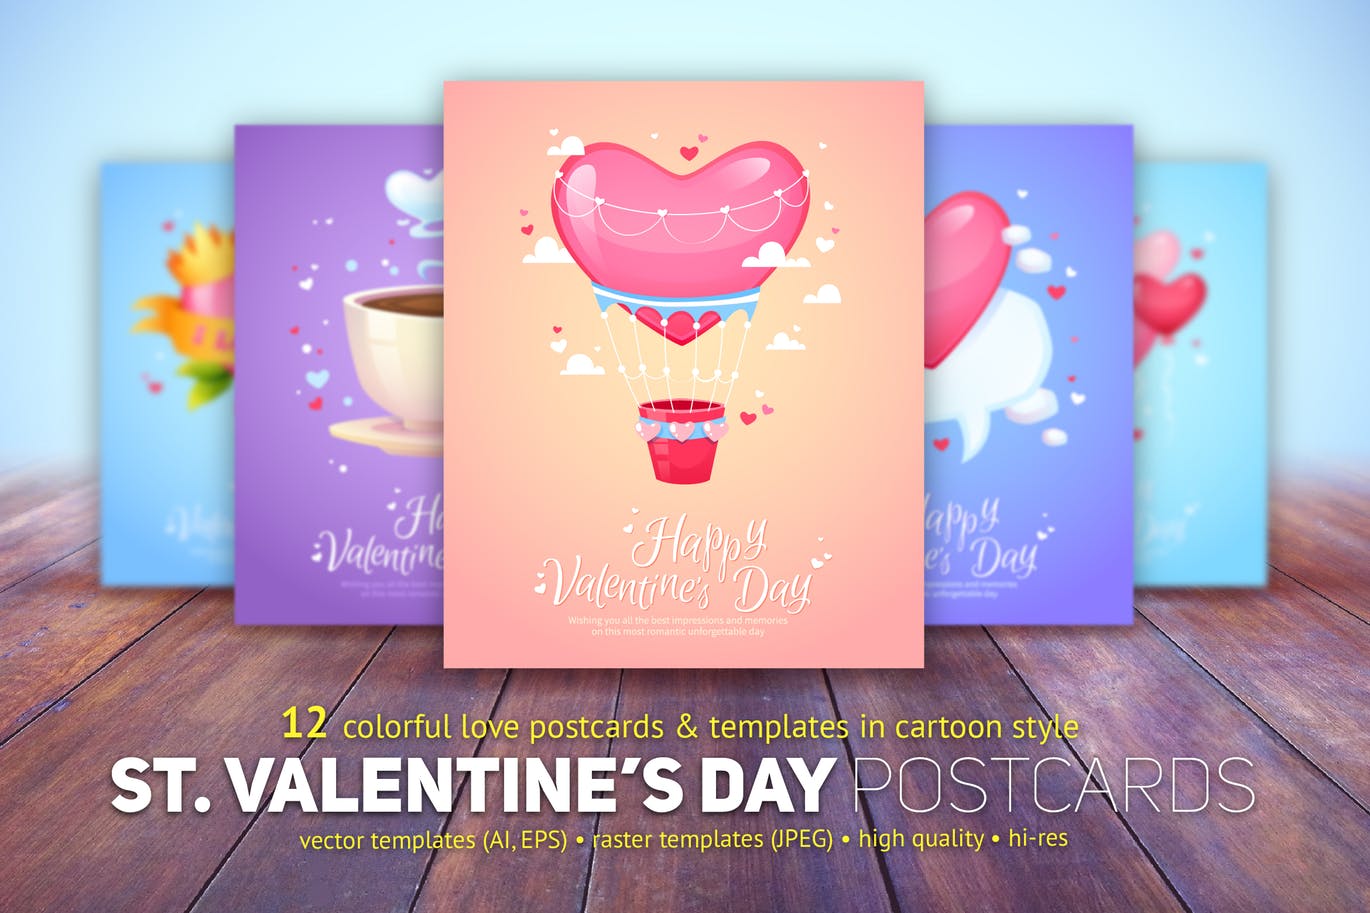 卡通设计风格情人节贺卡模板合集 St. Valentine’s Day Cards Templates插图